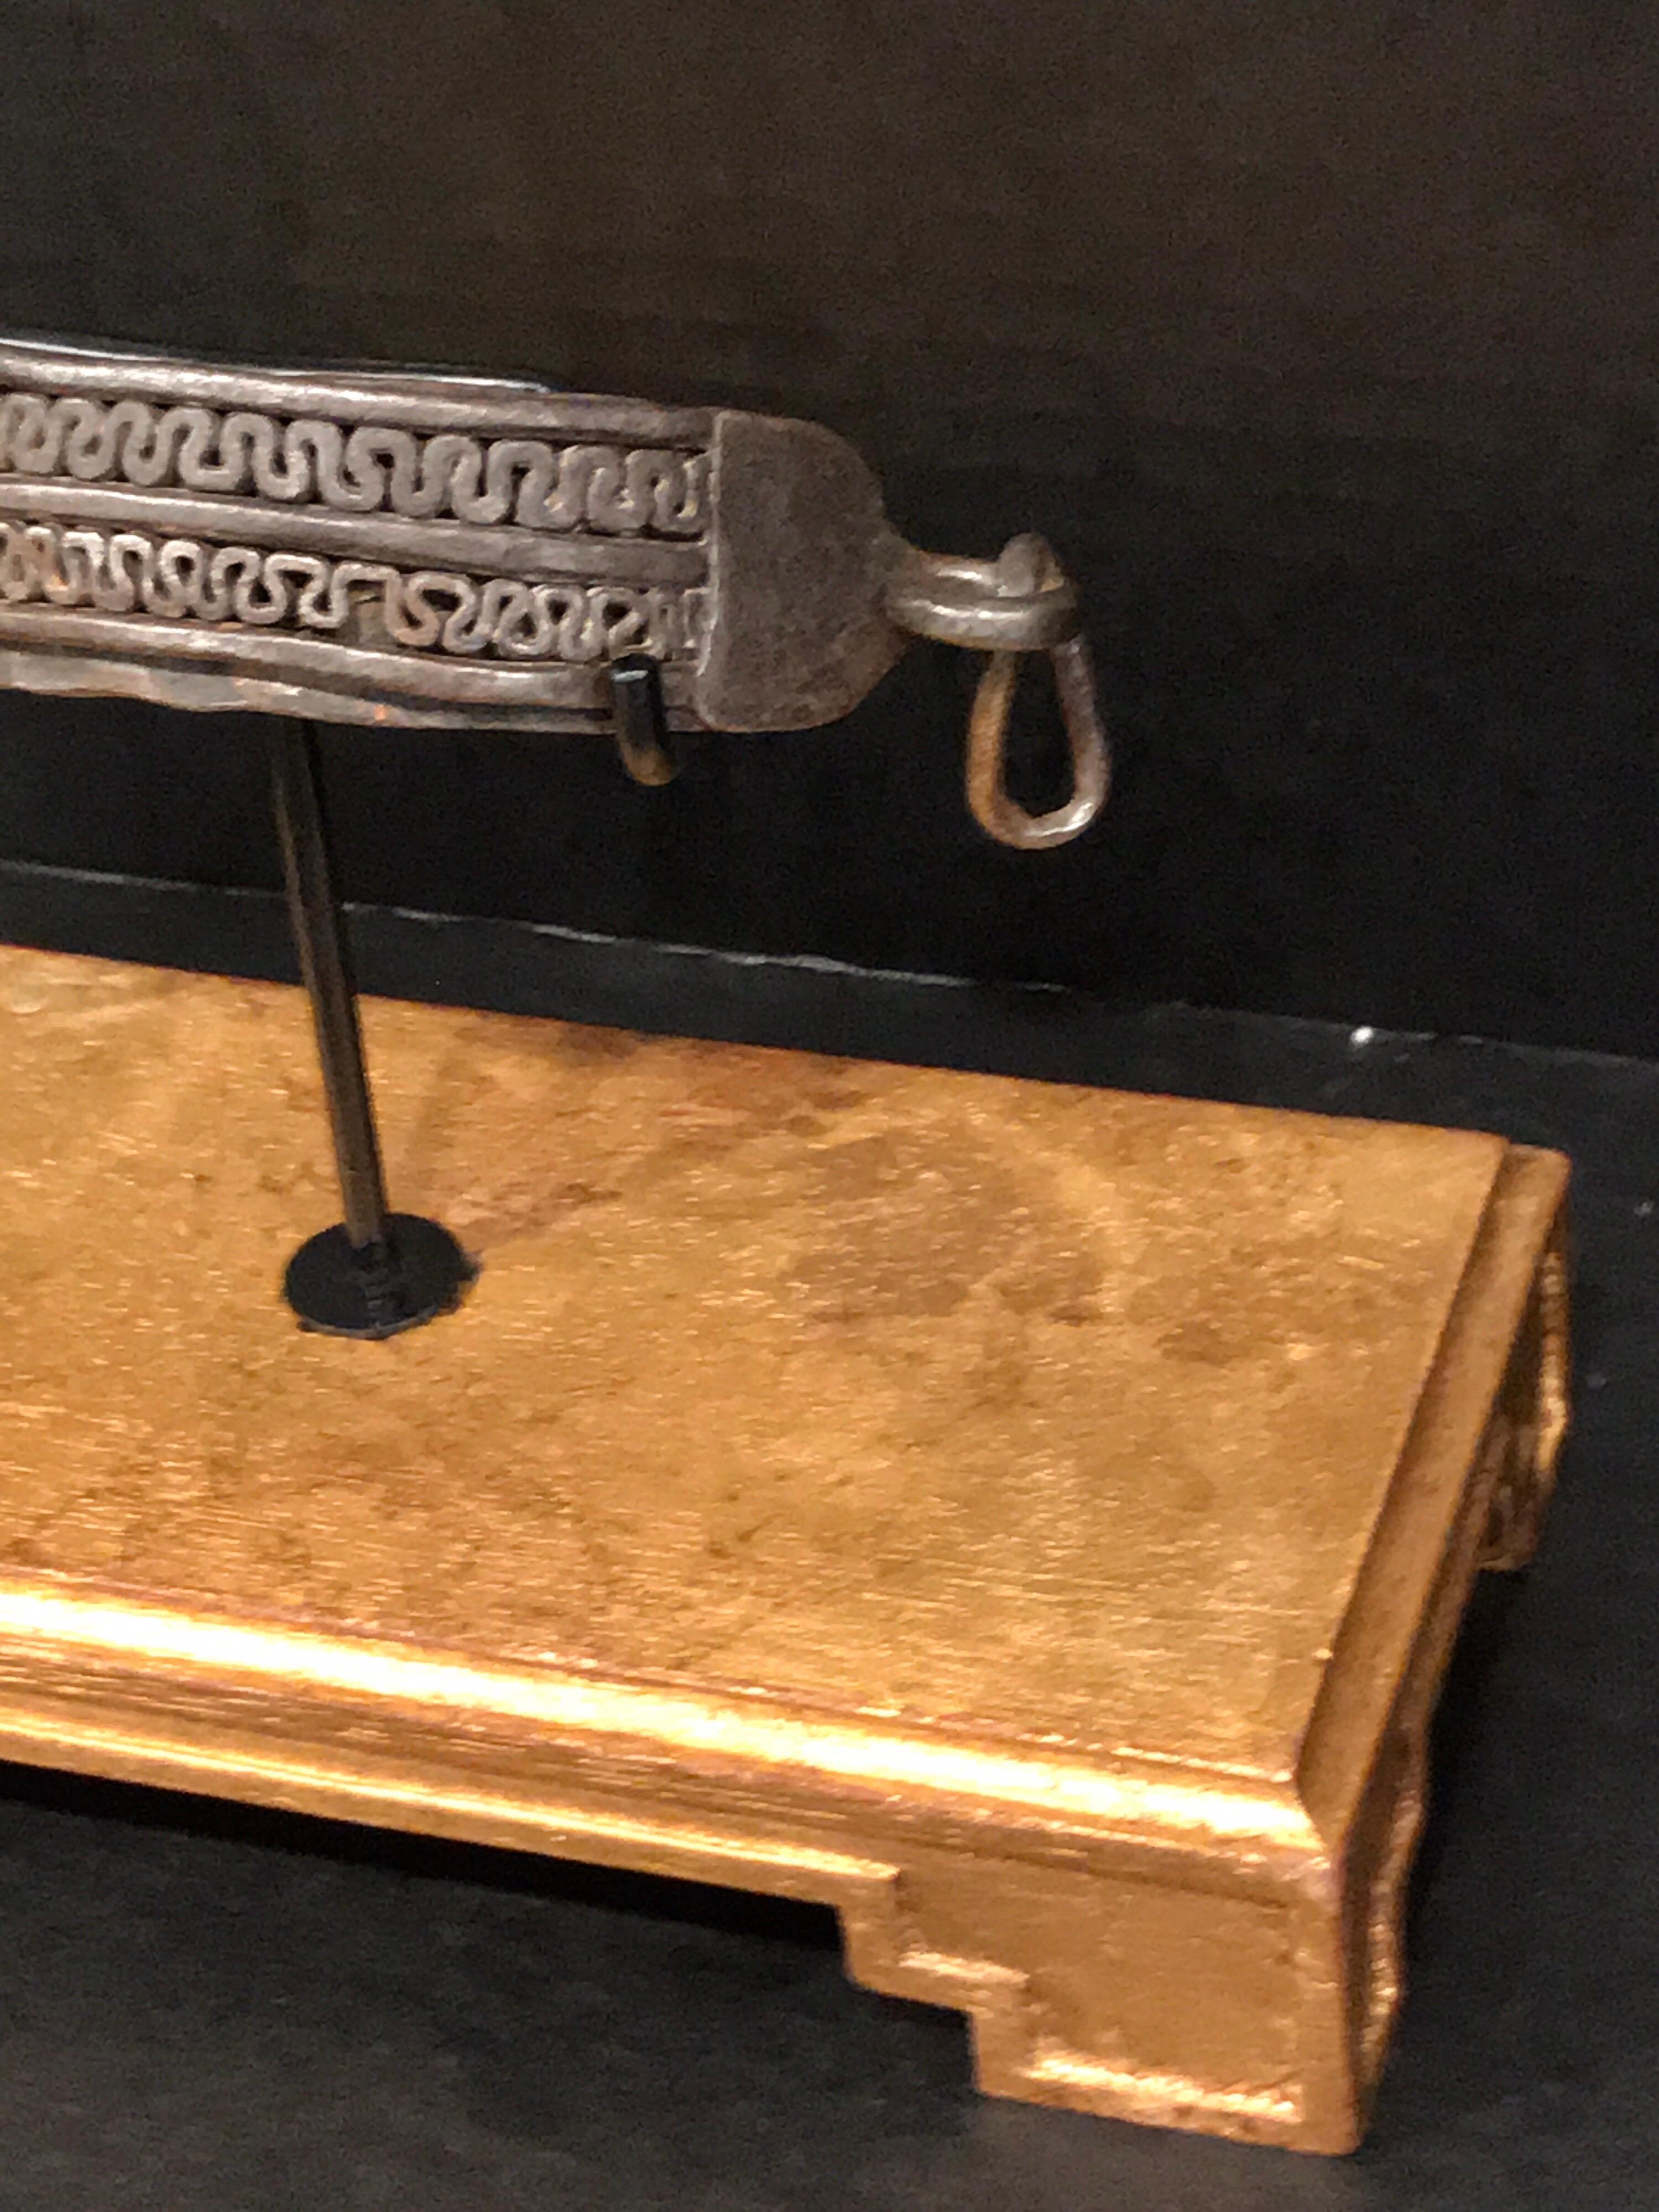 Eisernes Hundehalsband aus dem 17. Jahrhundert, museal auf einem rechteckigen Sockel aus Vergoldungsholz montiert. Mit zwei Reihen neoklassizistischer Beschläge. Das 6